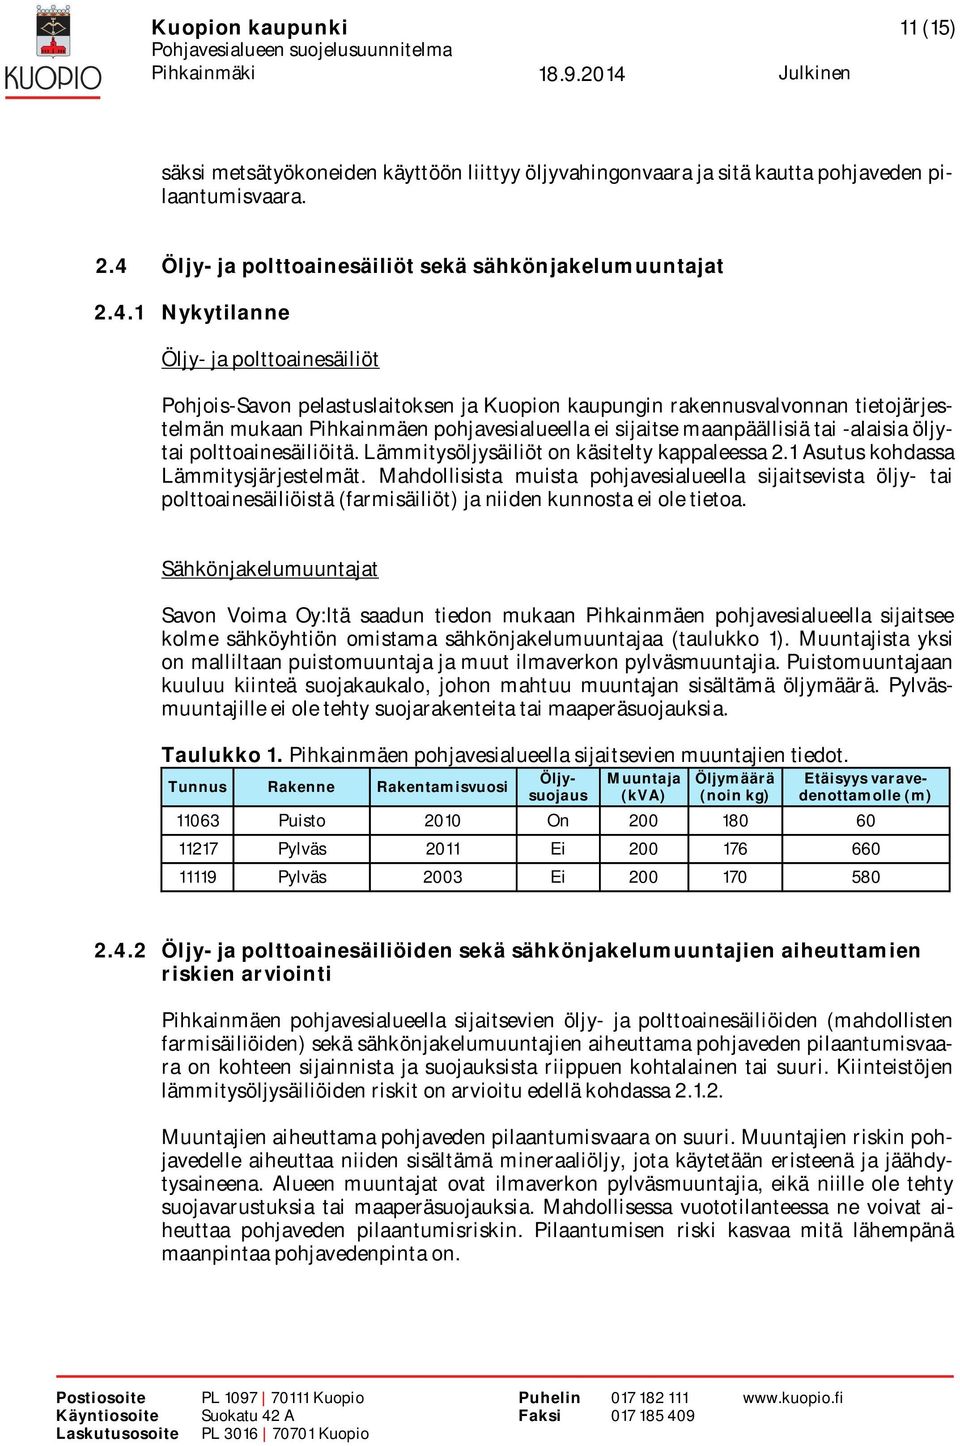 1 Nykytilanne Öljy- ja polttoainesäiliöt Pohjois-Savon pelastuslaitoksen ja Kuopion kaupungin rakennusvalvonnan tietojärjestelmän mukaan Pihkainmäen pohjavesialueella ei sijaitse maanpäällisiä tai